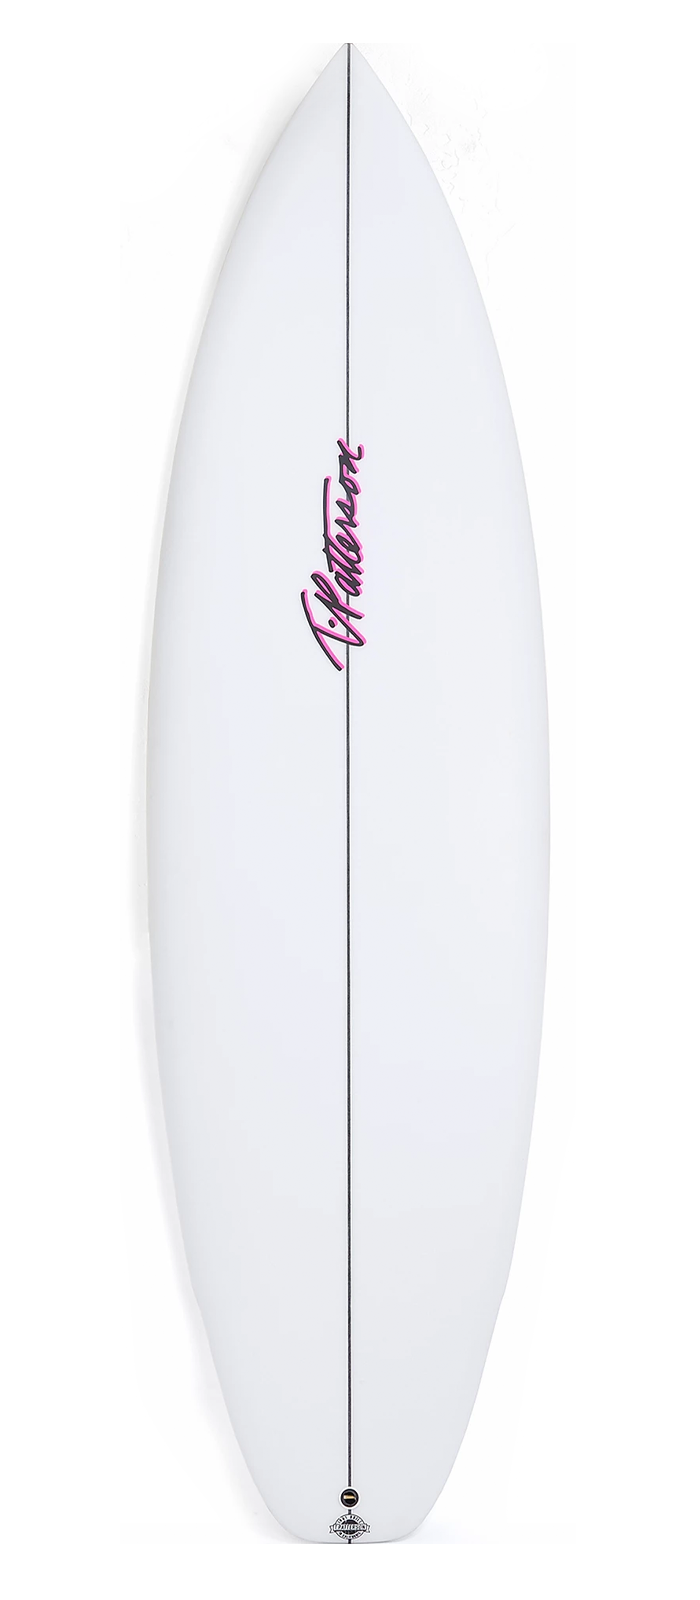 SYNTHETIC 84 surfboard model deck